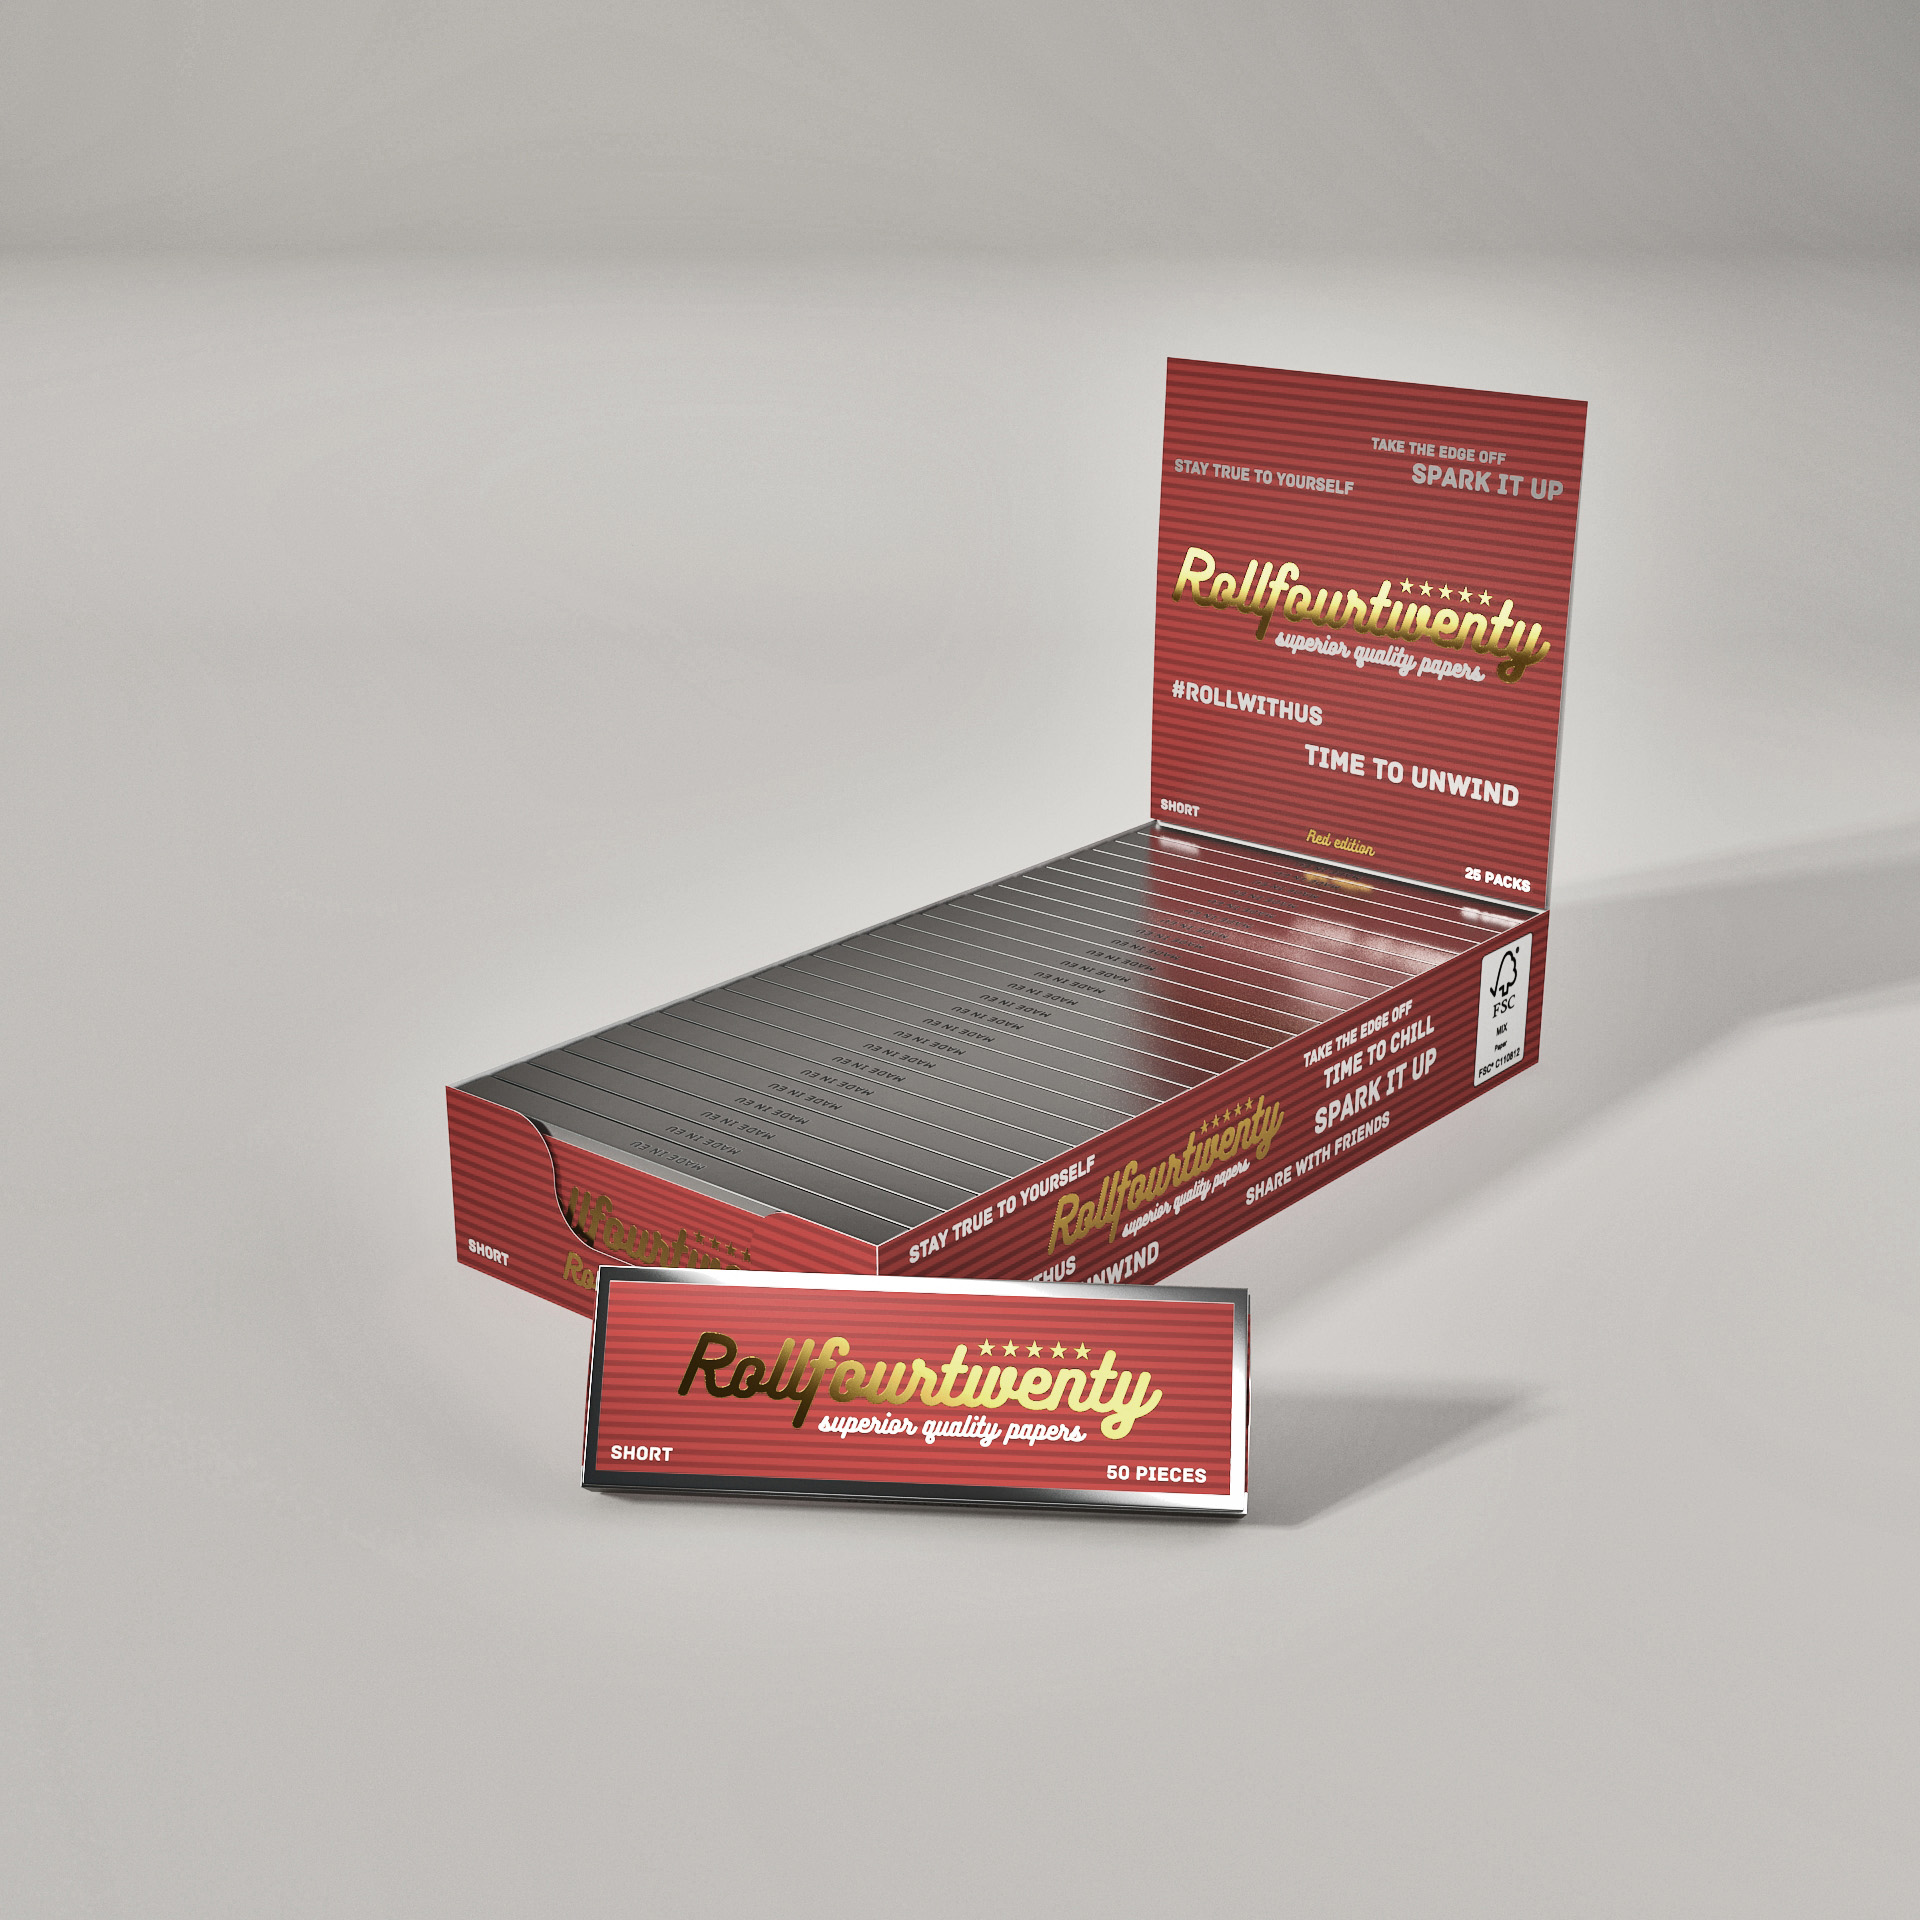 Cigaretové papírky - Short v červené nebo stříbrné barvě - box 25 ks